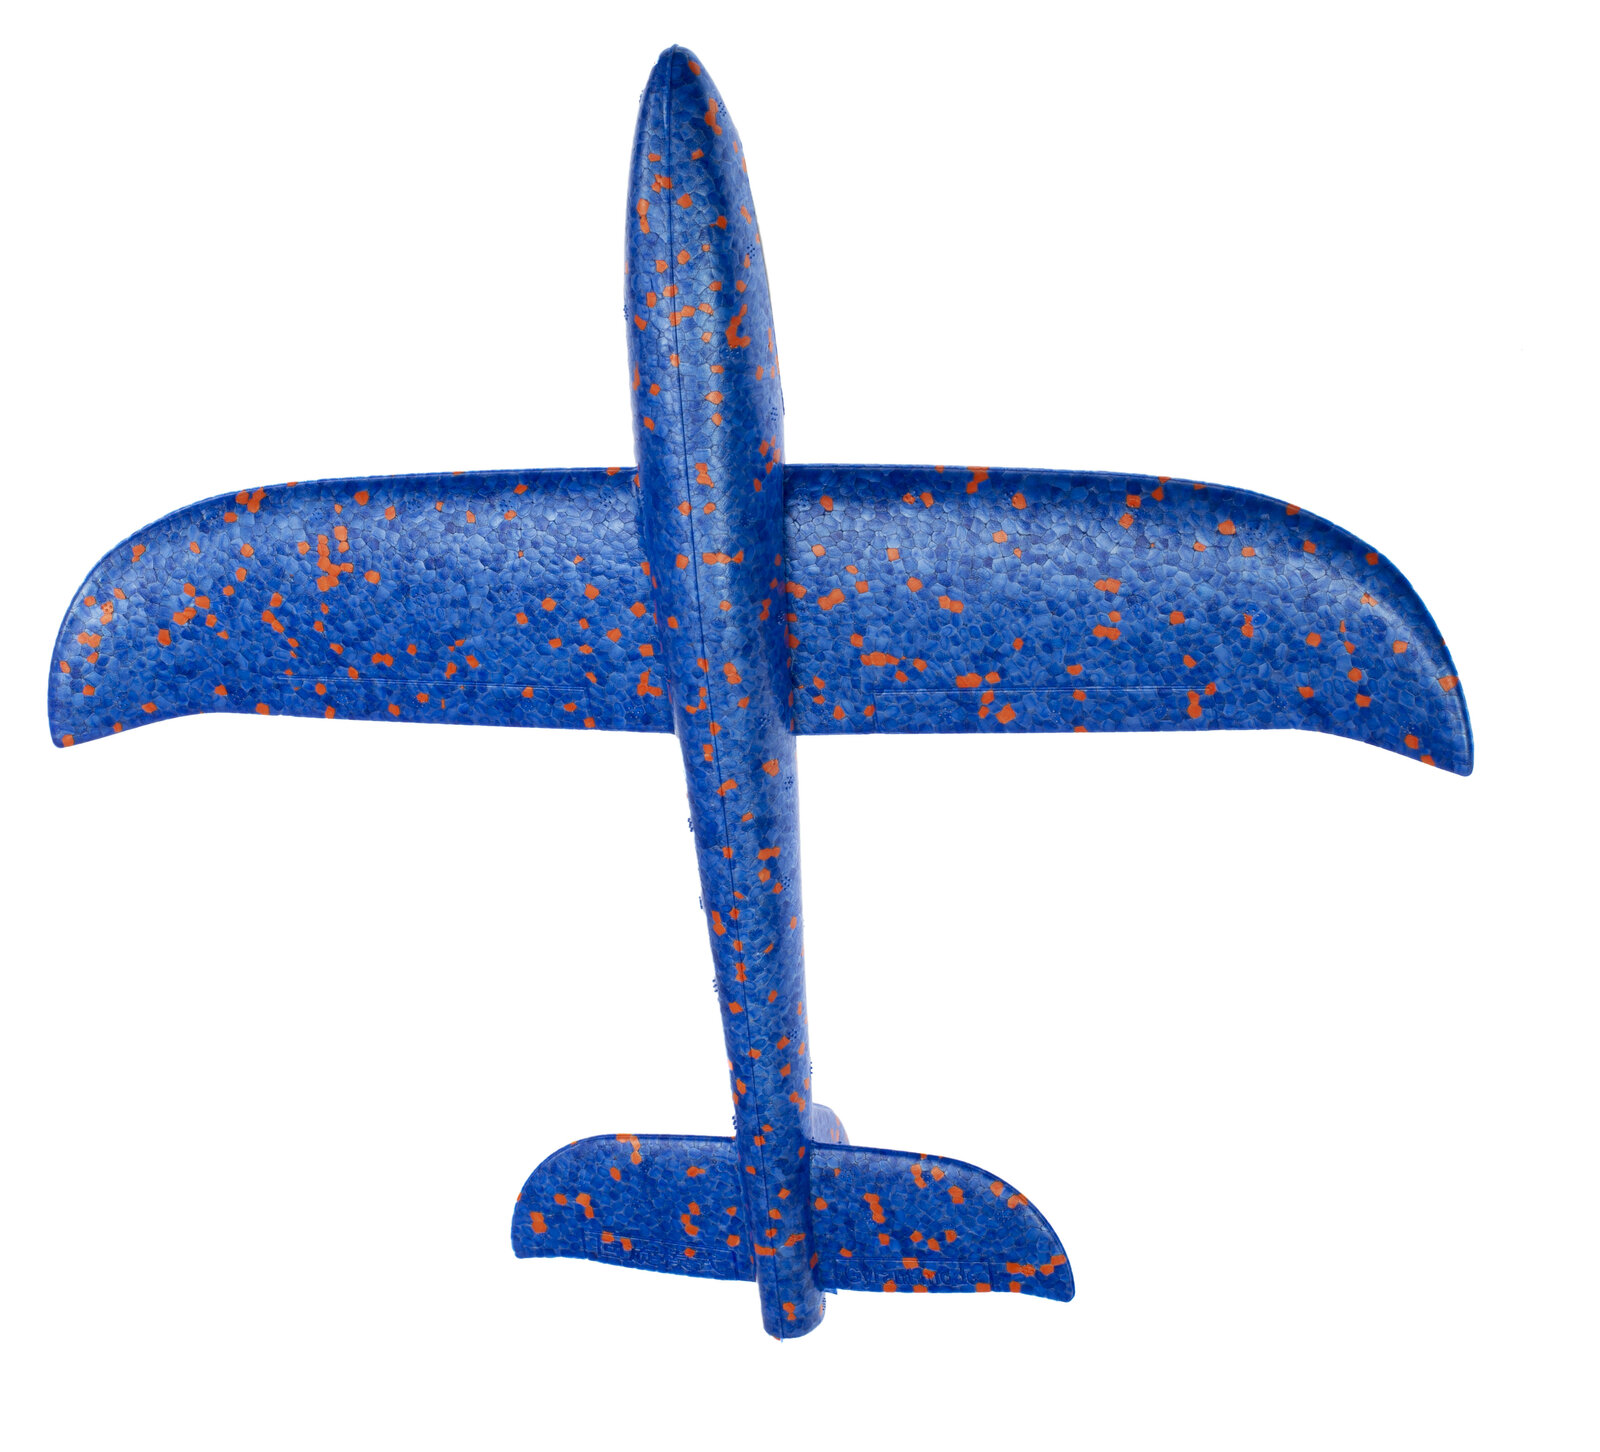 Samolot styropianowy - aerodynamika